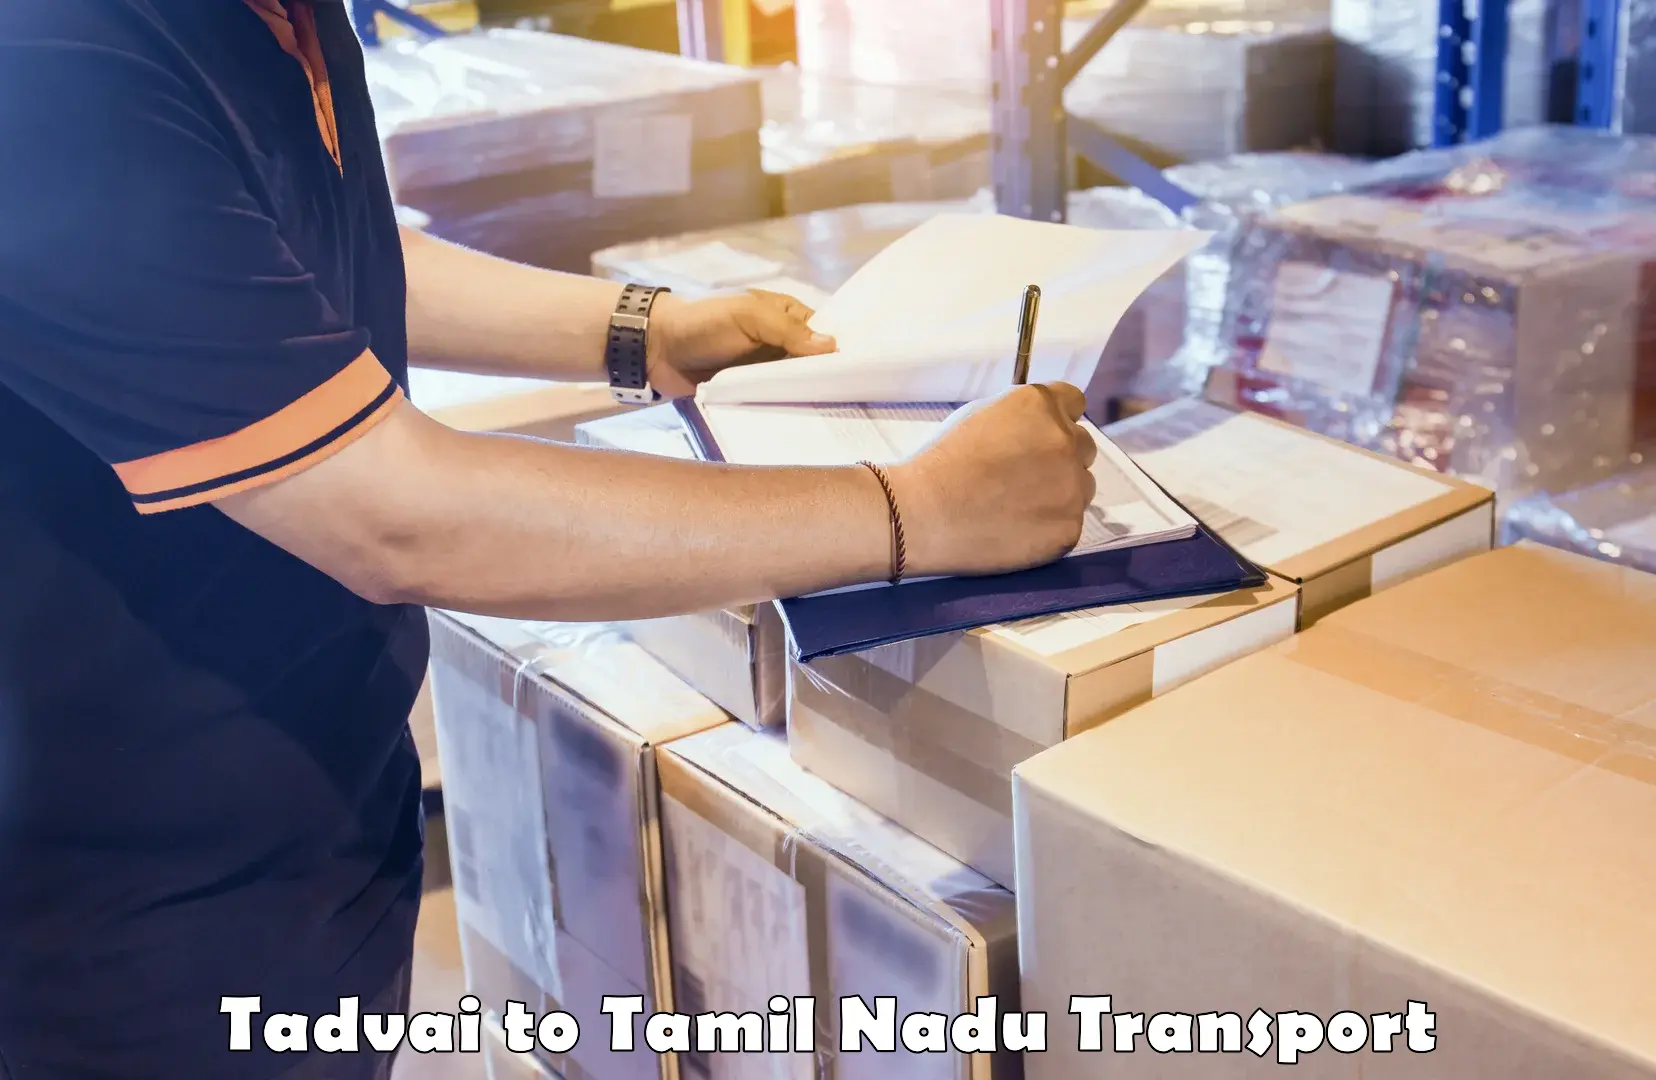 Shipping partner Tadvai to Thiruporur